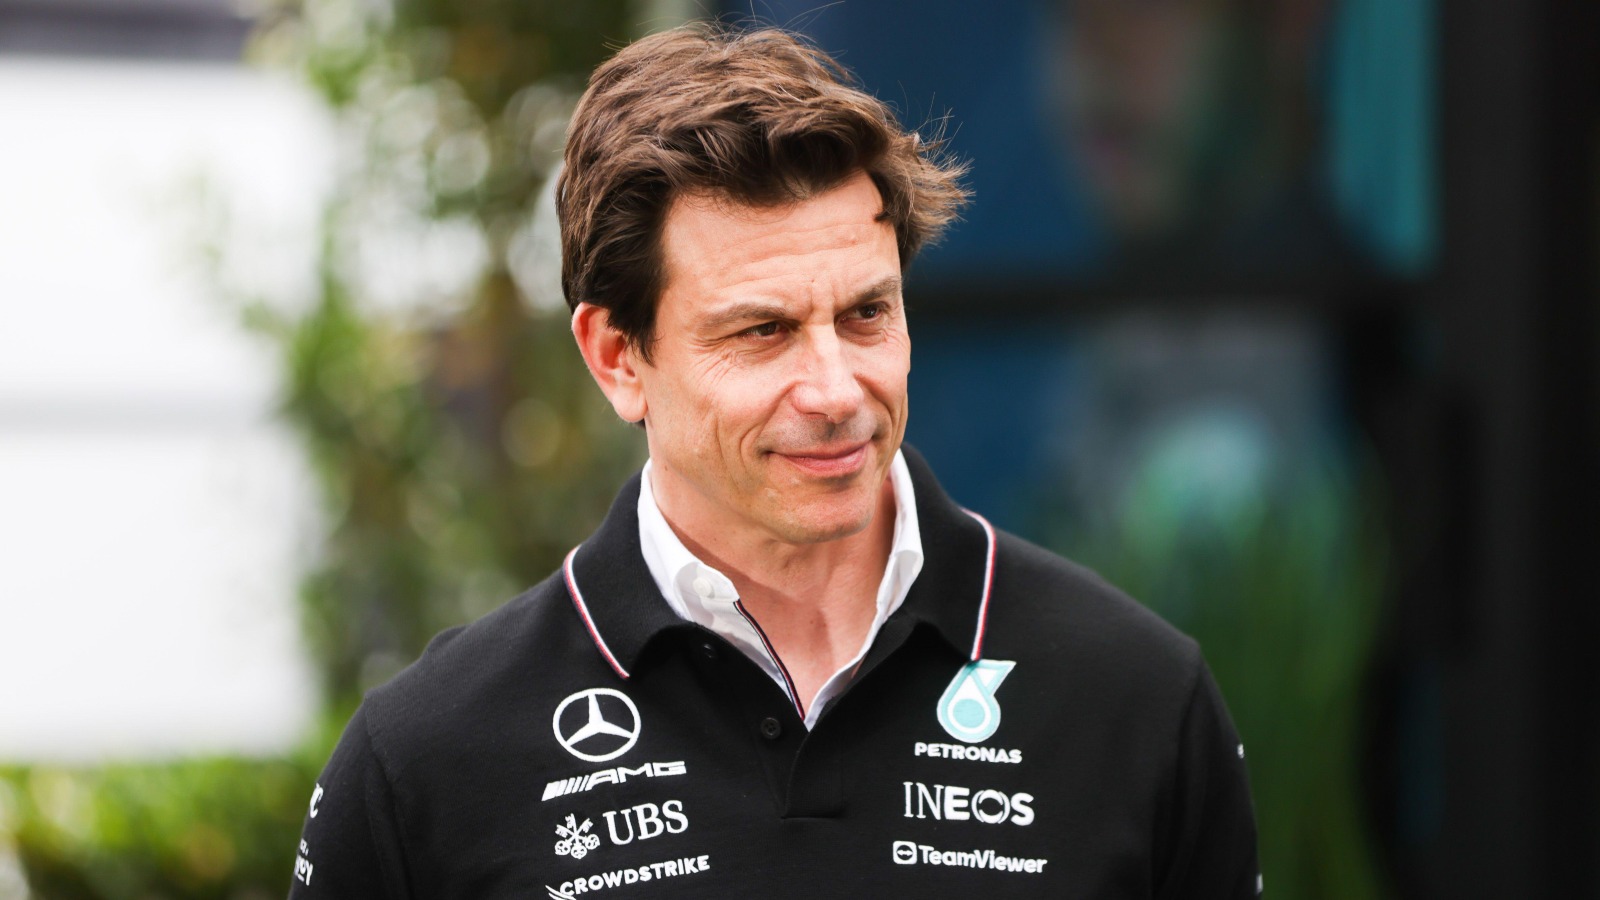 “Siamo sulla strada giusta per tornare a vincere”, afferma Wolff convinto che la Mercedes stia facendo progressi per raggiungere l’obiettivo